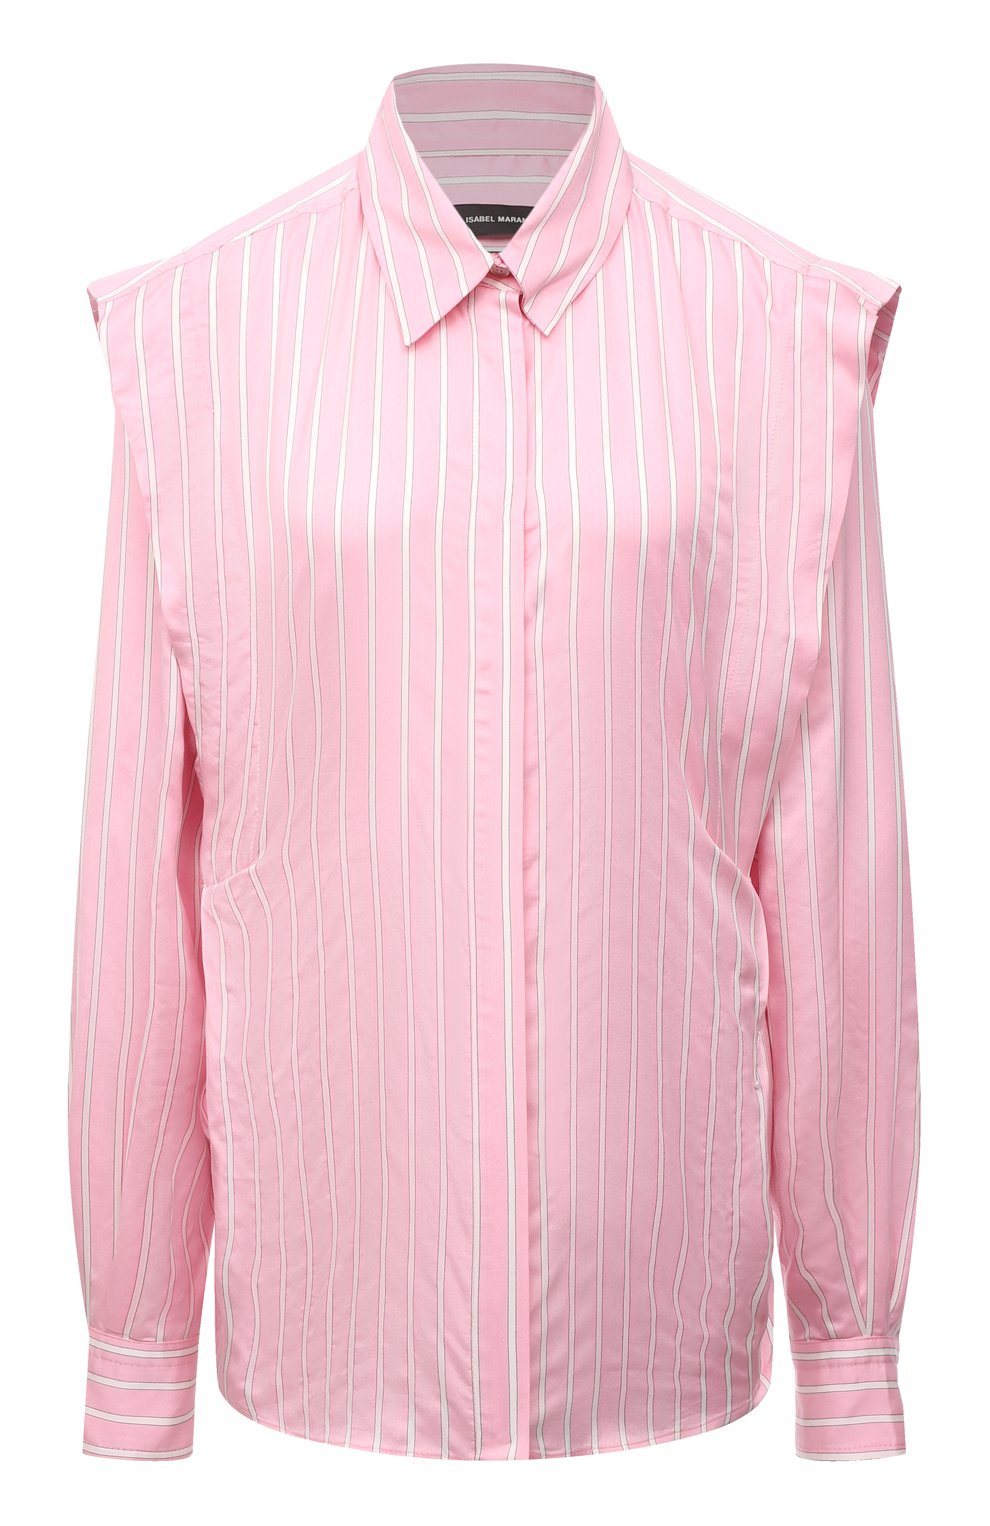 Женская рубашка ISABEL MARANT светло-розового цвета, арт. CH0791-22P024I/S0TALKI | Фото 1 (Материал внешний: Купро, Шелк, Растительное волокно; Рукава: Длинные; Принт: Полоска, С принтом; Женское Кросс-КТ: Рубашка-одежда; Длина (для топов): Удлиненные; Стили: Кэжуэл)